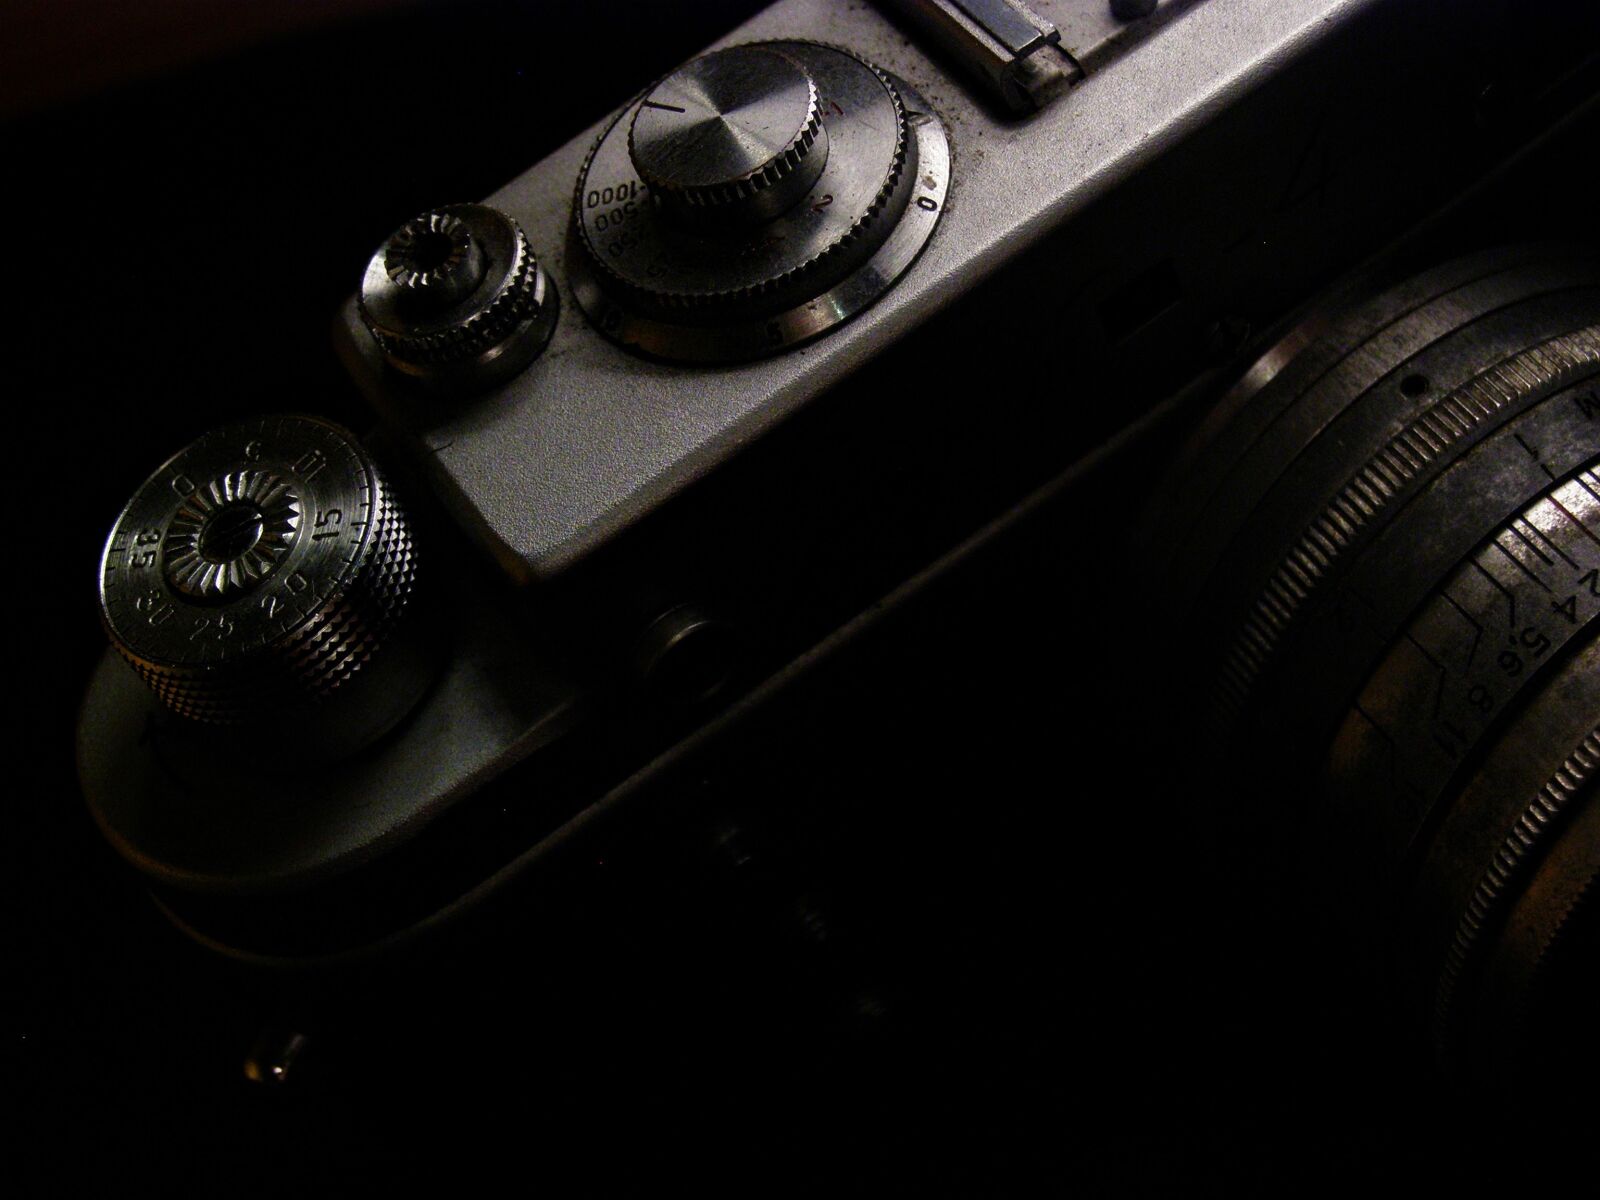 Olympus SP510UZ sample photo. Analogue photography, camera, analog photography